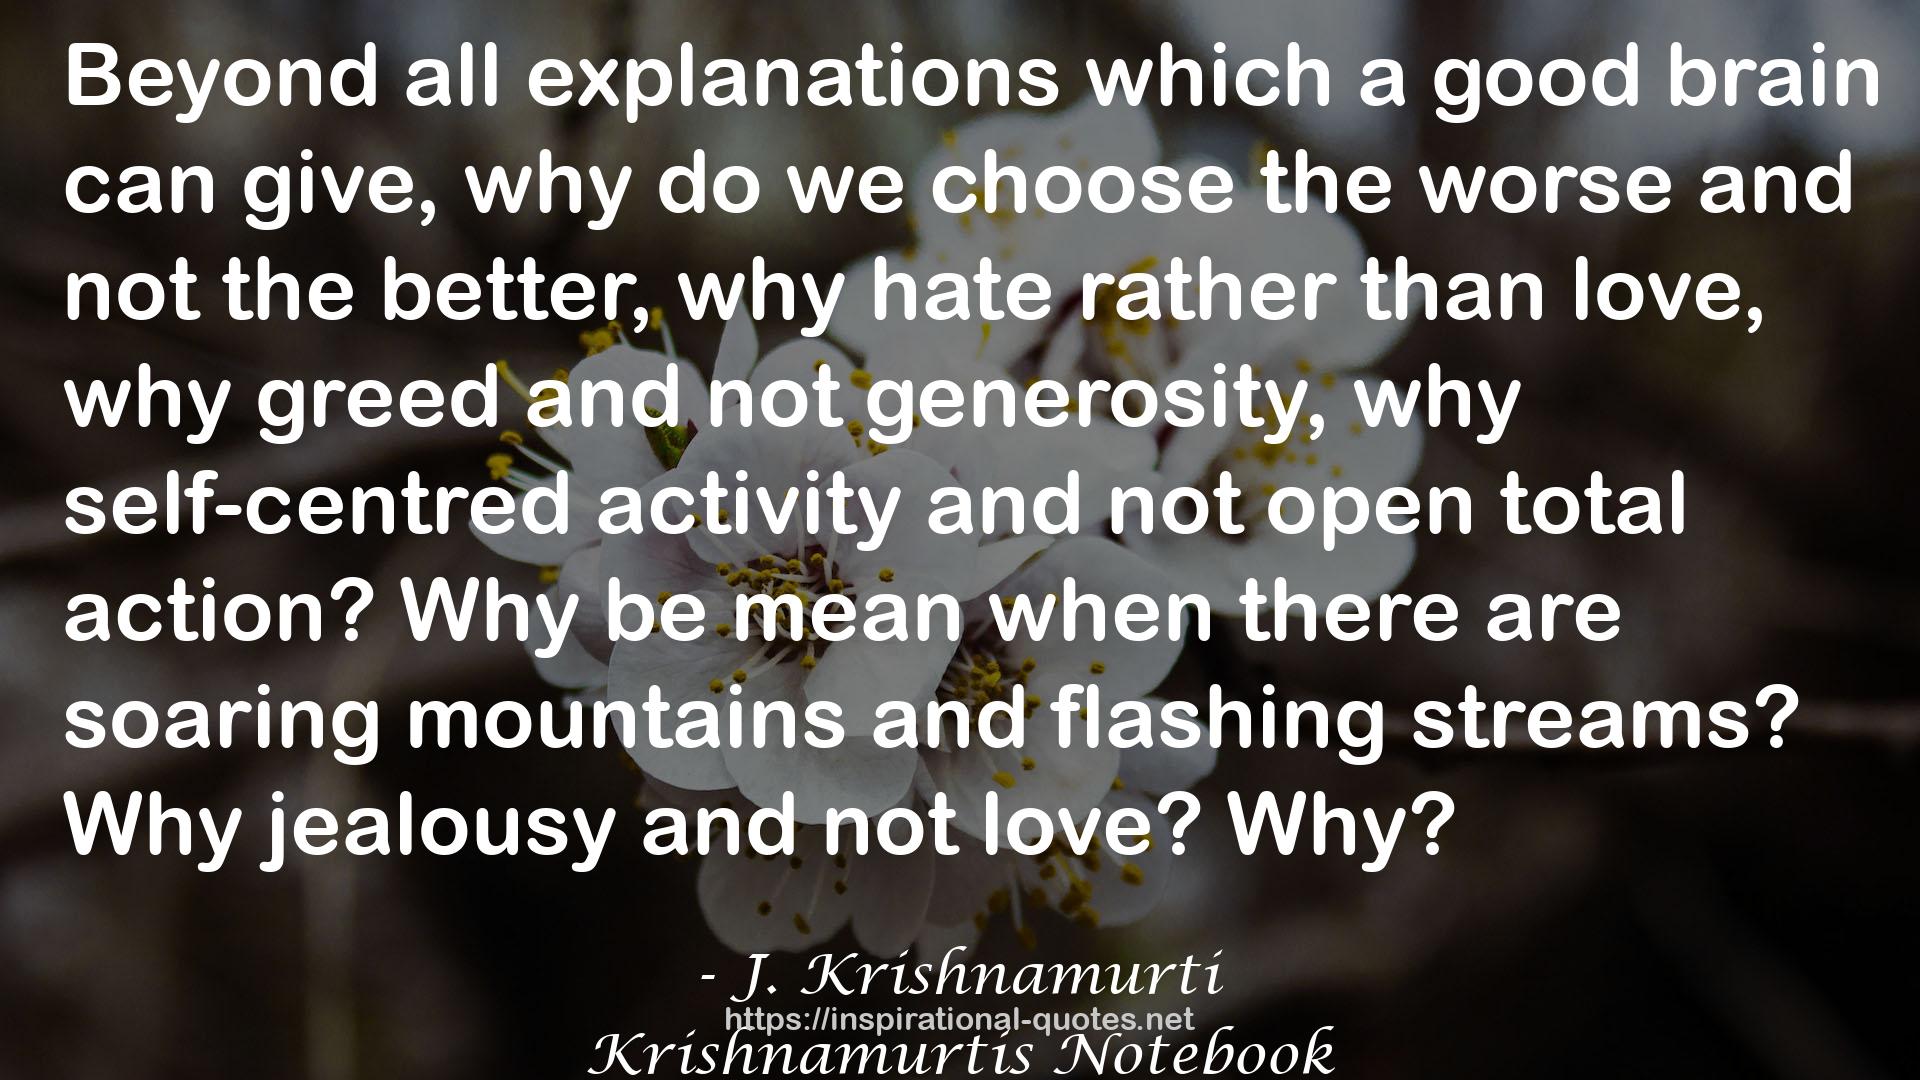 J. Krishnamurti QUOTES